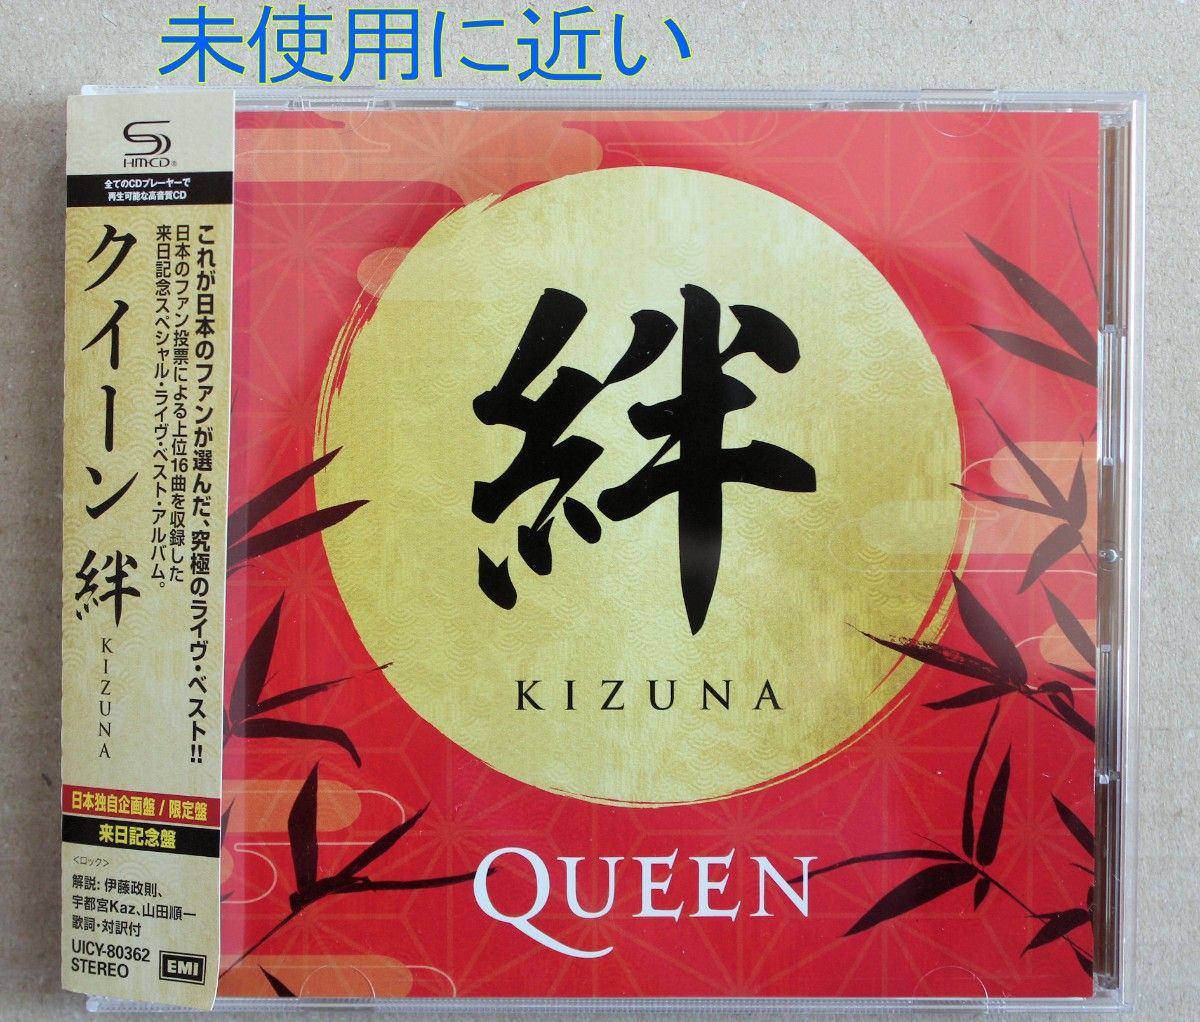 【超美品】QUEEN 絆(Kizuna) SHM-CD 初回限定のメガジャケ付き 